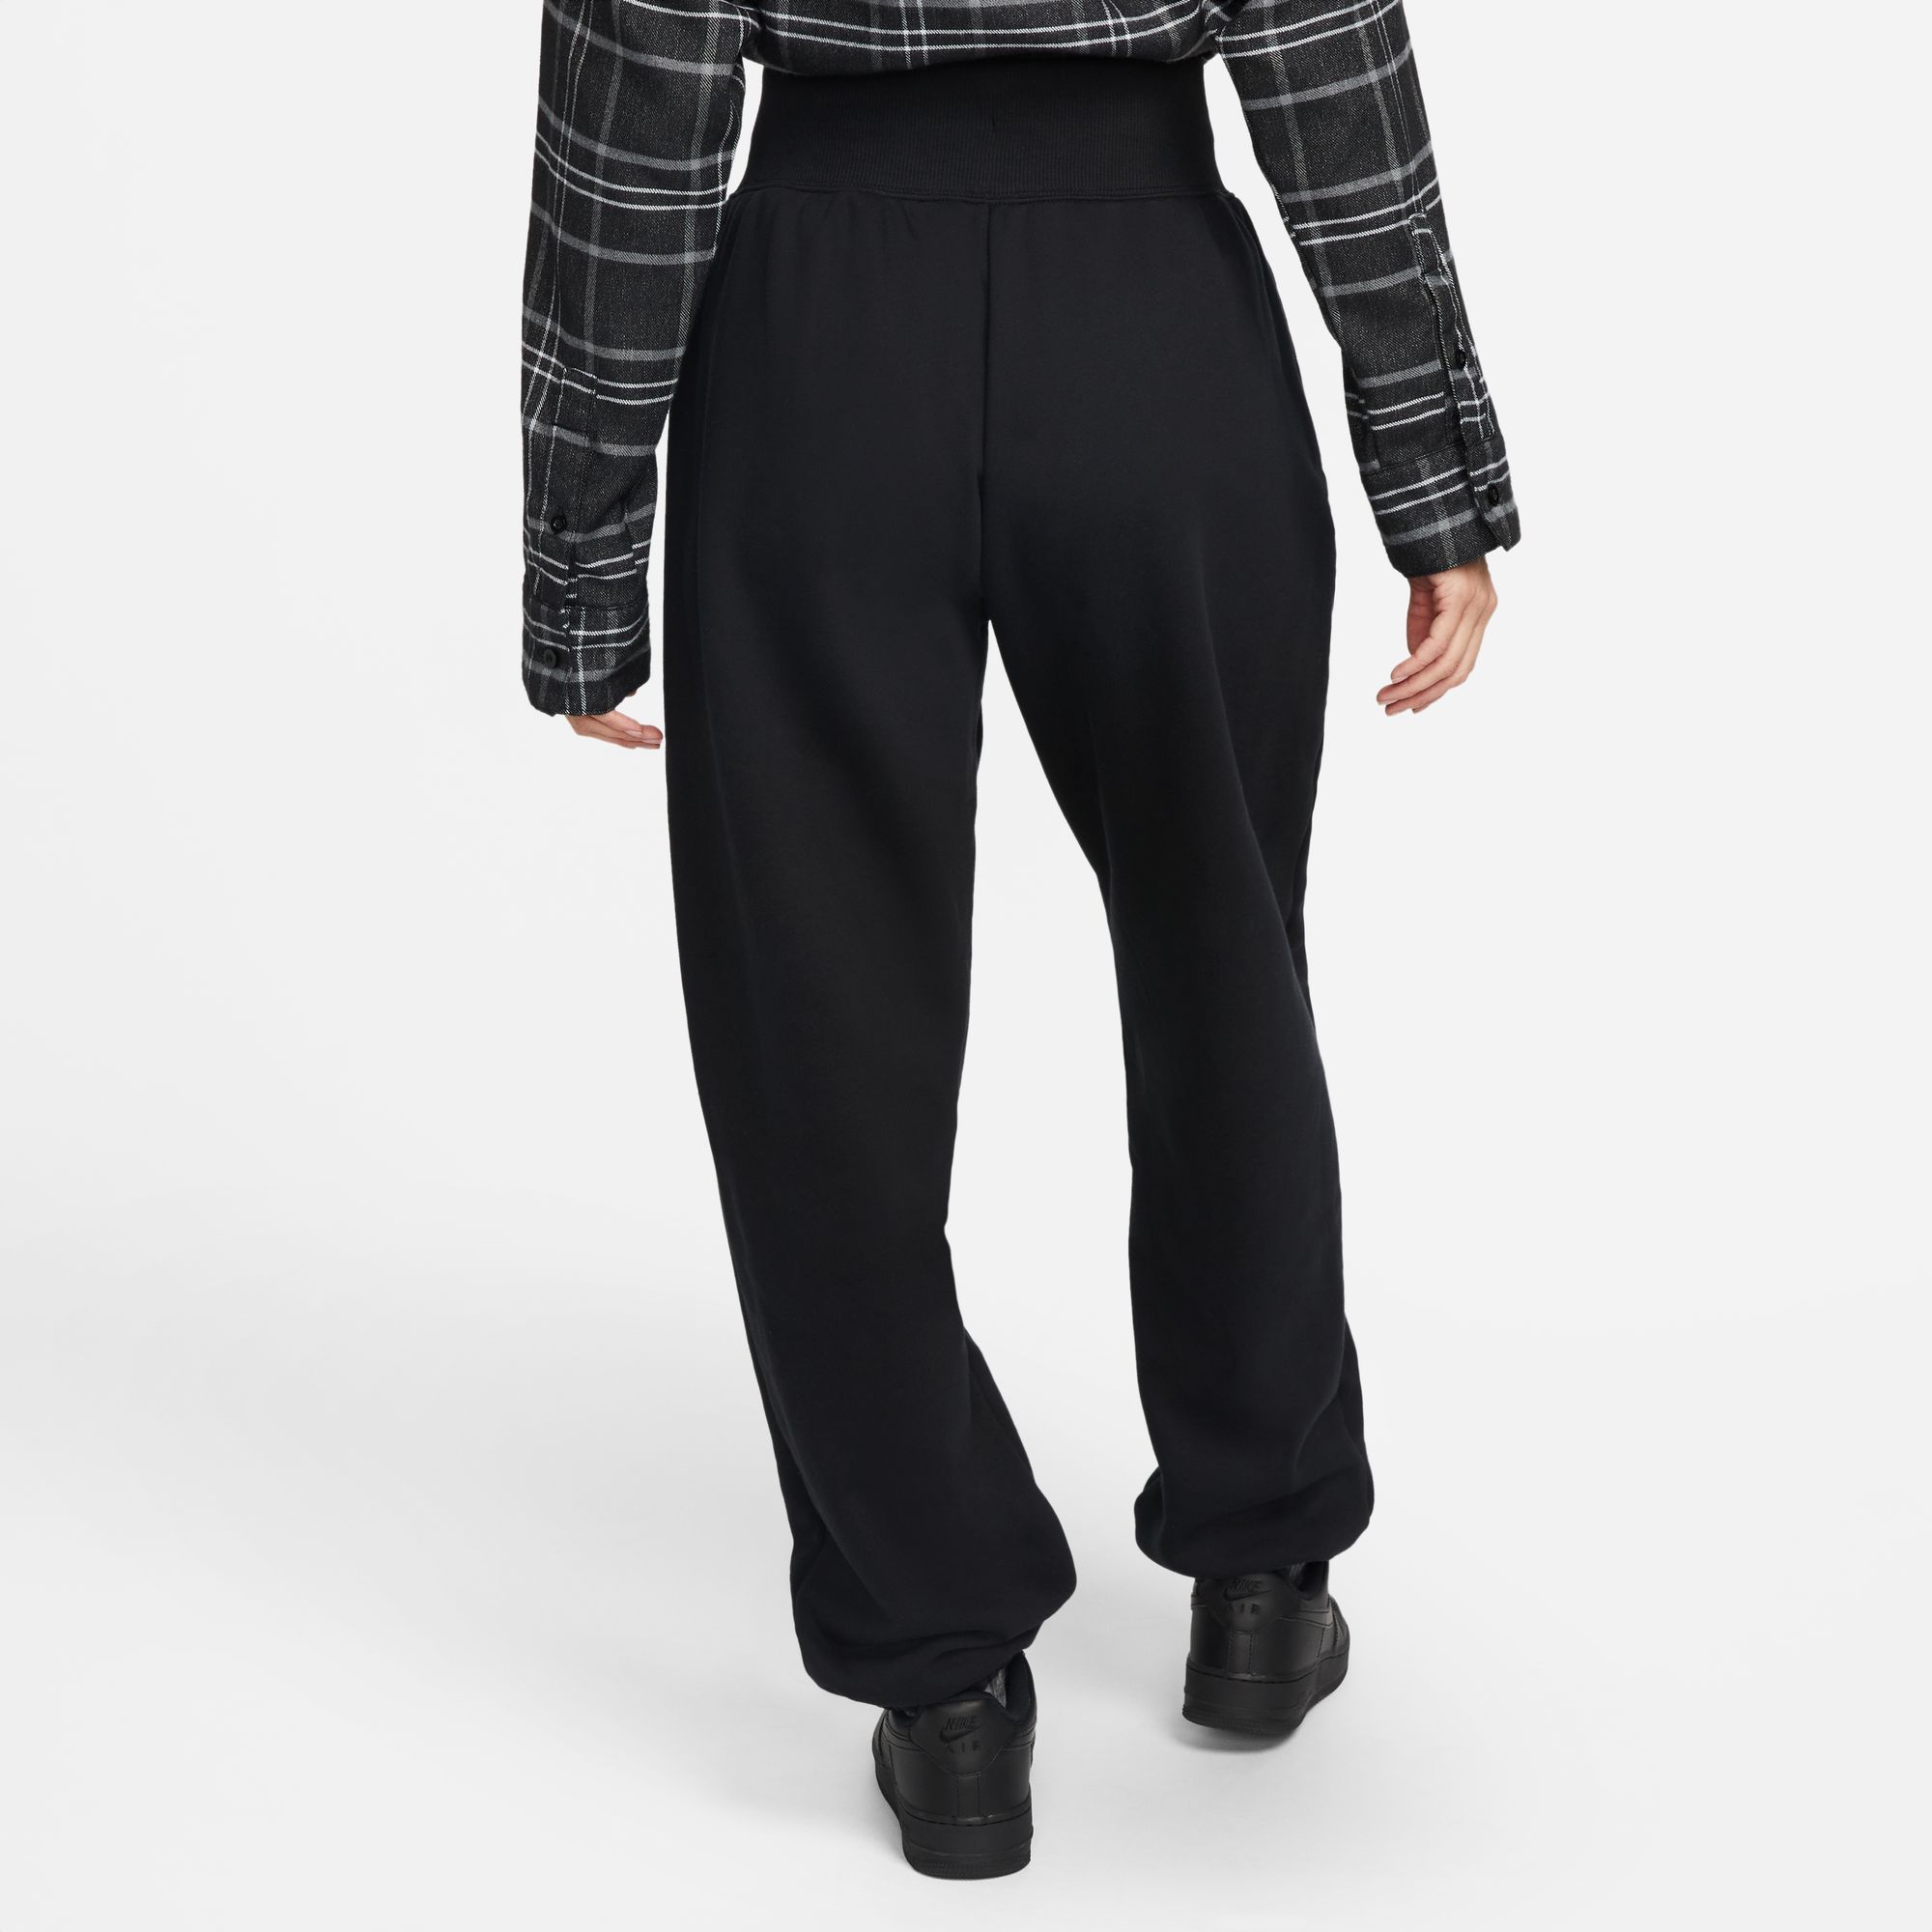 Nike Sportswear Phoenix Fleece High-Waisted Oversized Sweatpants